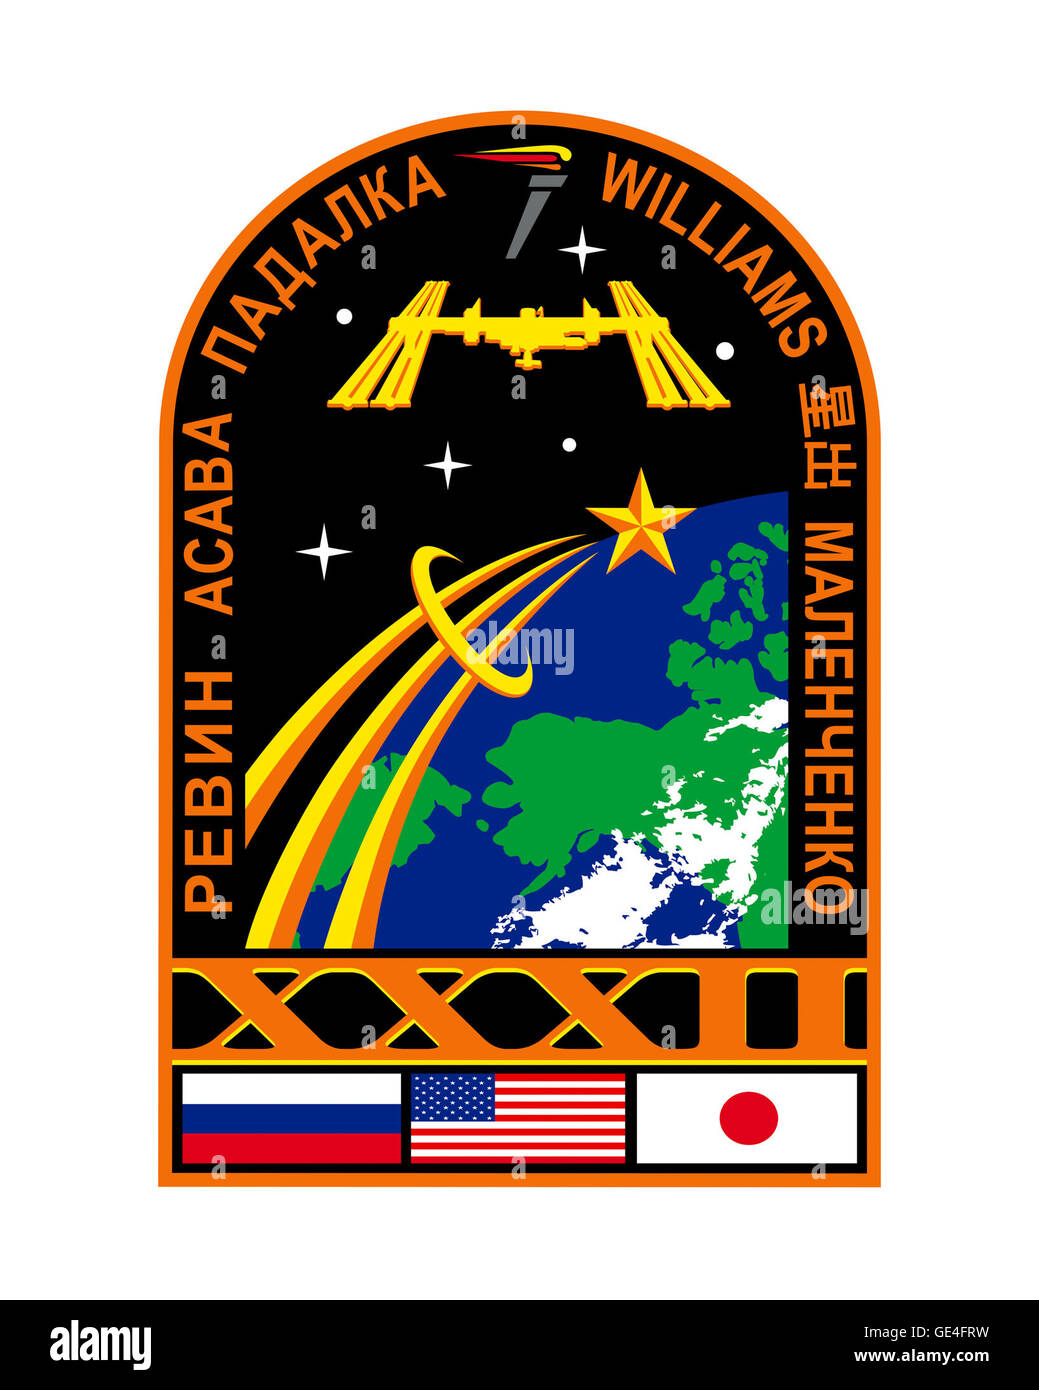 Lancio: Soyuz TMA-04M 14 maggio 2012 sbarco: Settembre 16, 2012 lancio Soyuz TMA-05M Luglio 14, 2012 sbarco: Novembre 18, 2012 astronauti: Gennady Padalka, Yuri Malenchenko, Sergei Revin, Joe Acaba, Sunita Williams e Akihiko Hoshide Expedition 32 ha iniziato con la Soyuz TMA-03M disinserimento nel luglio 2012. Tre nuovi membri di equipaggio sono arrivati poco dopo sul Soyuz TMA-05M. Questa patch rappresenta la trentaduesima spedizione per la Stazione Spaziale Internazionale (ISS) e il significato della scienza essendo condotta lì per le generazioni attuali e future. La forma ad arco del patch simboleggia la "porta Foto Stock